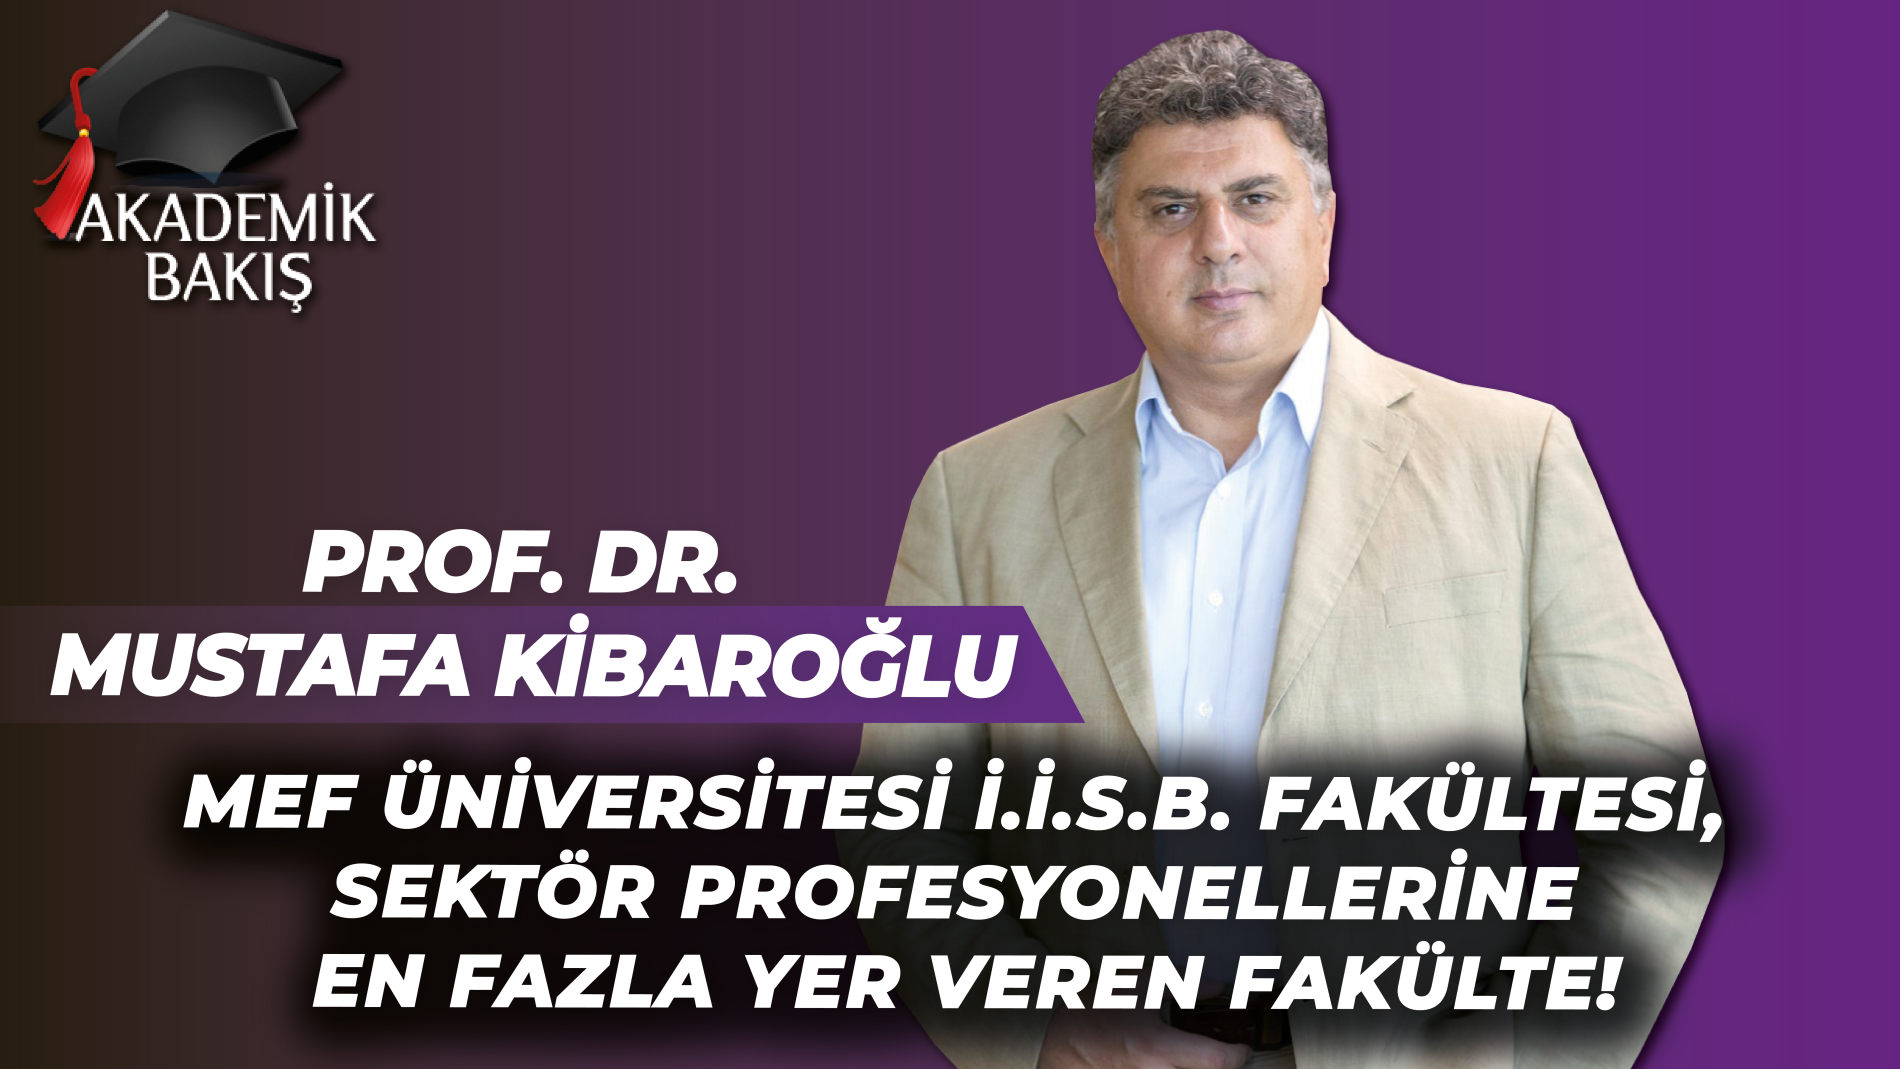 Prof.Dr. Mustafa Kibaroğlu Michael Kuyucu ile Akademik Bakış’a Konuk Oldu